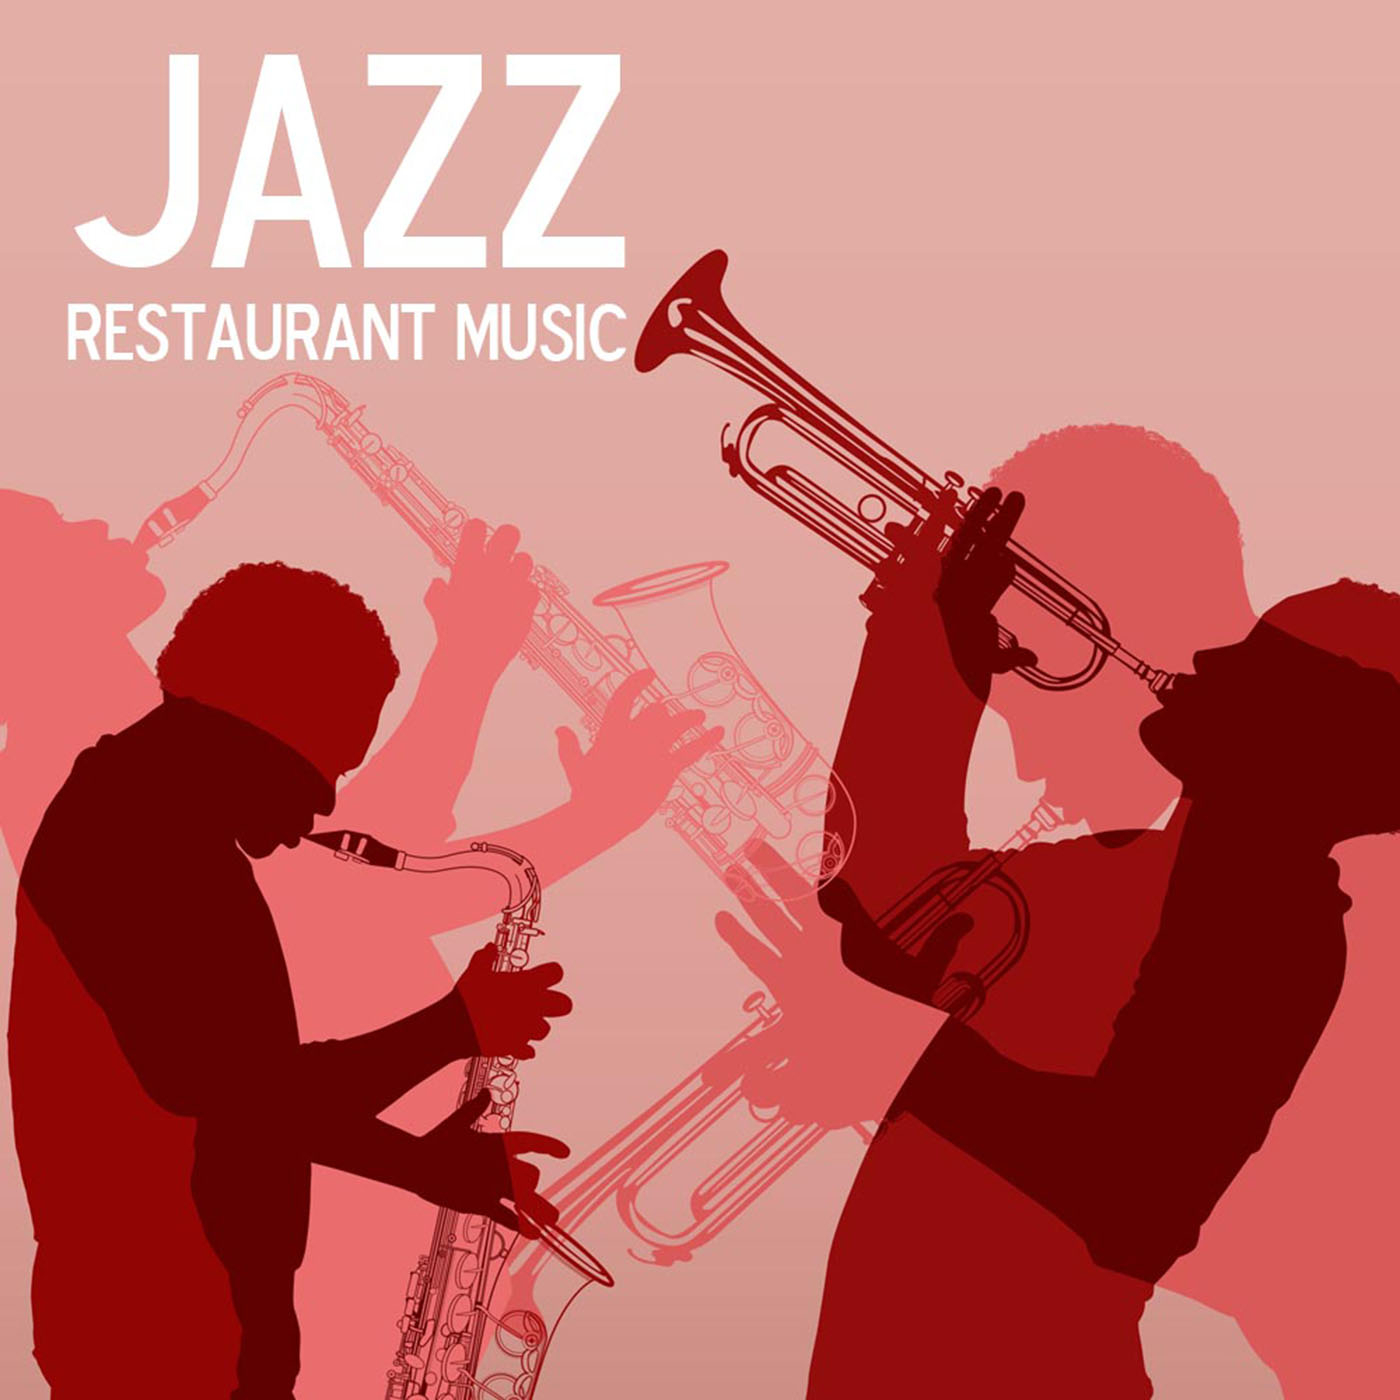 Restaurant Music Jazz